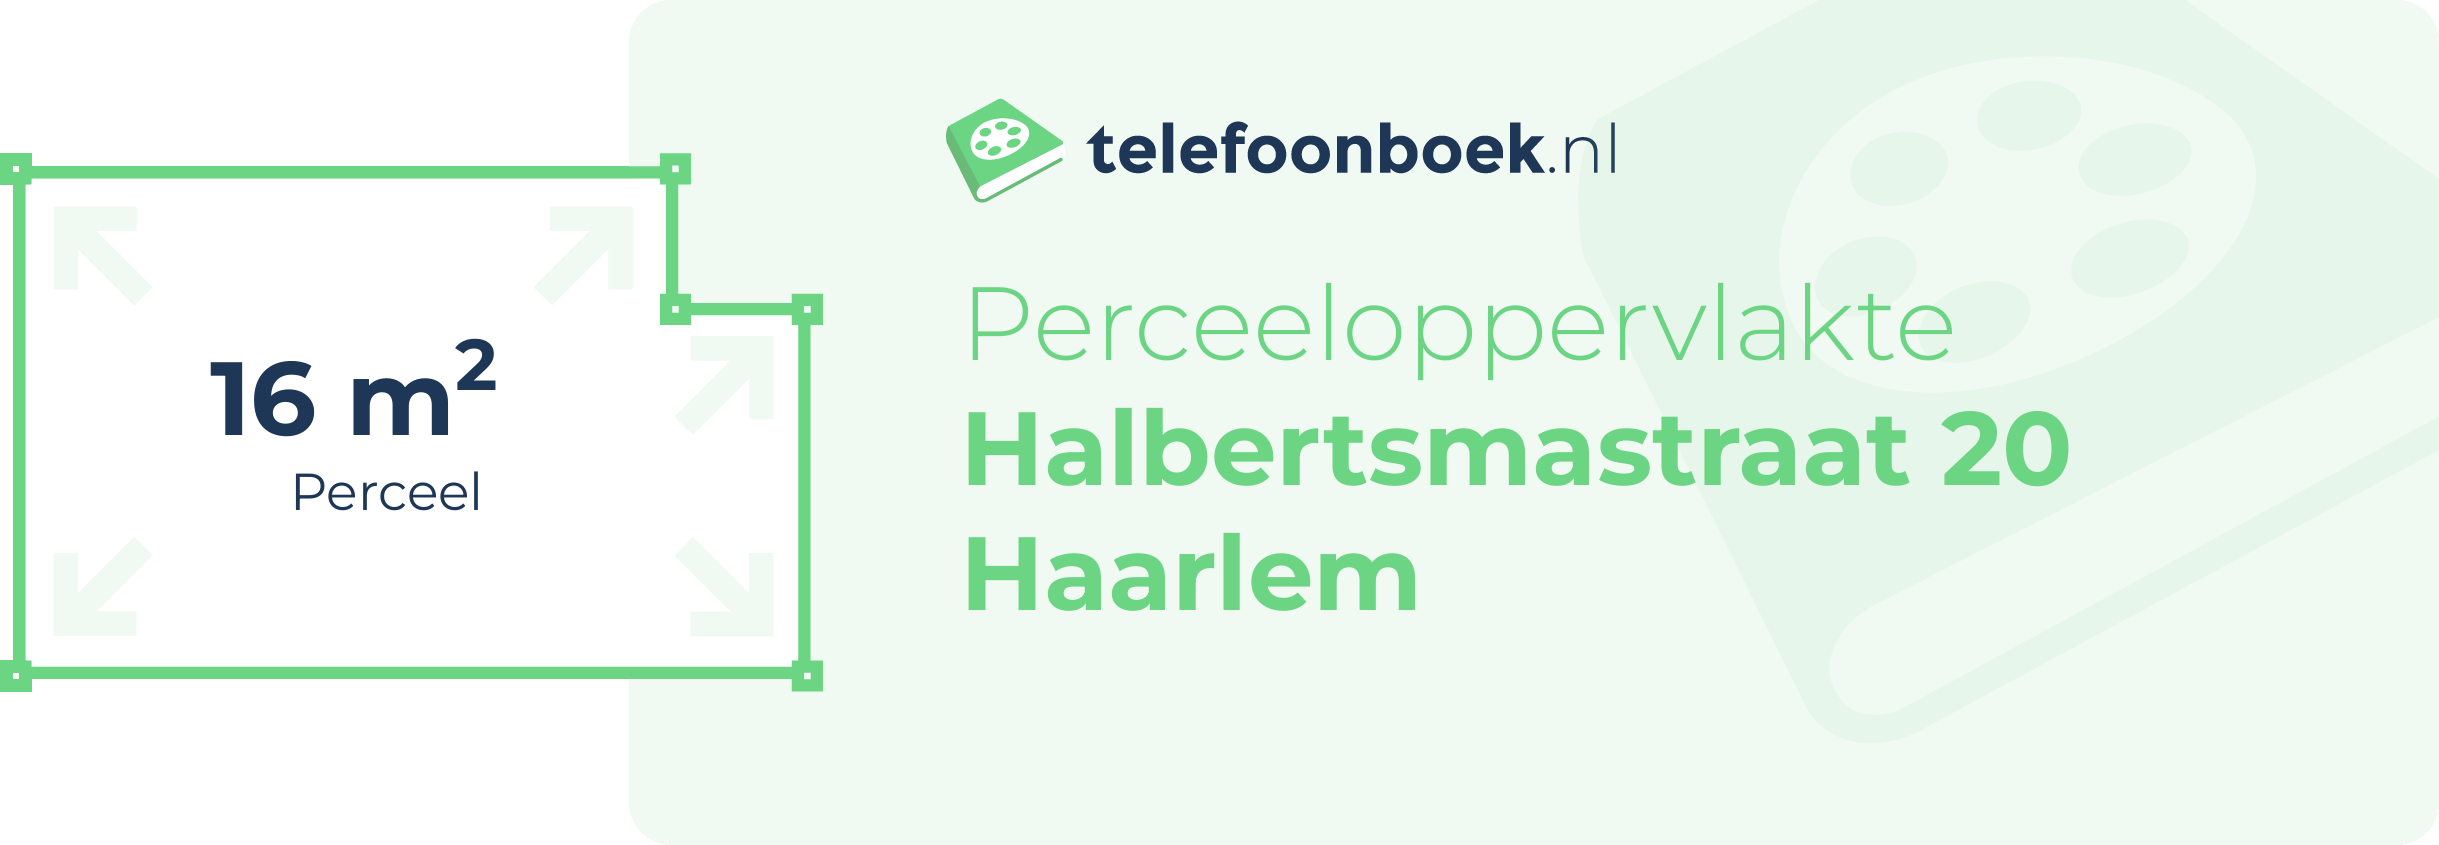 Perceeloppervlakte Halbertsmastraat 20 Haarlem